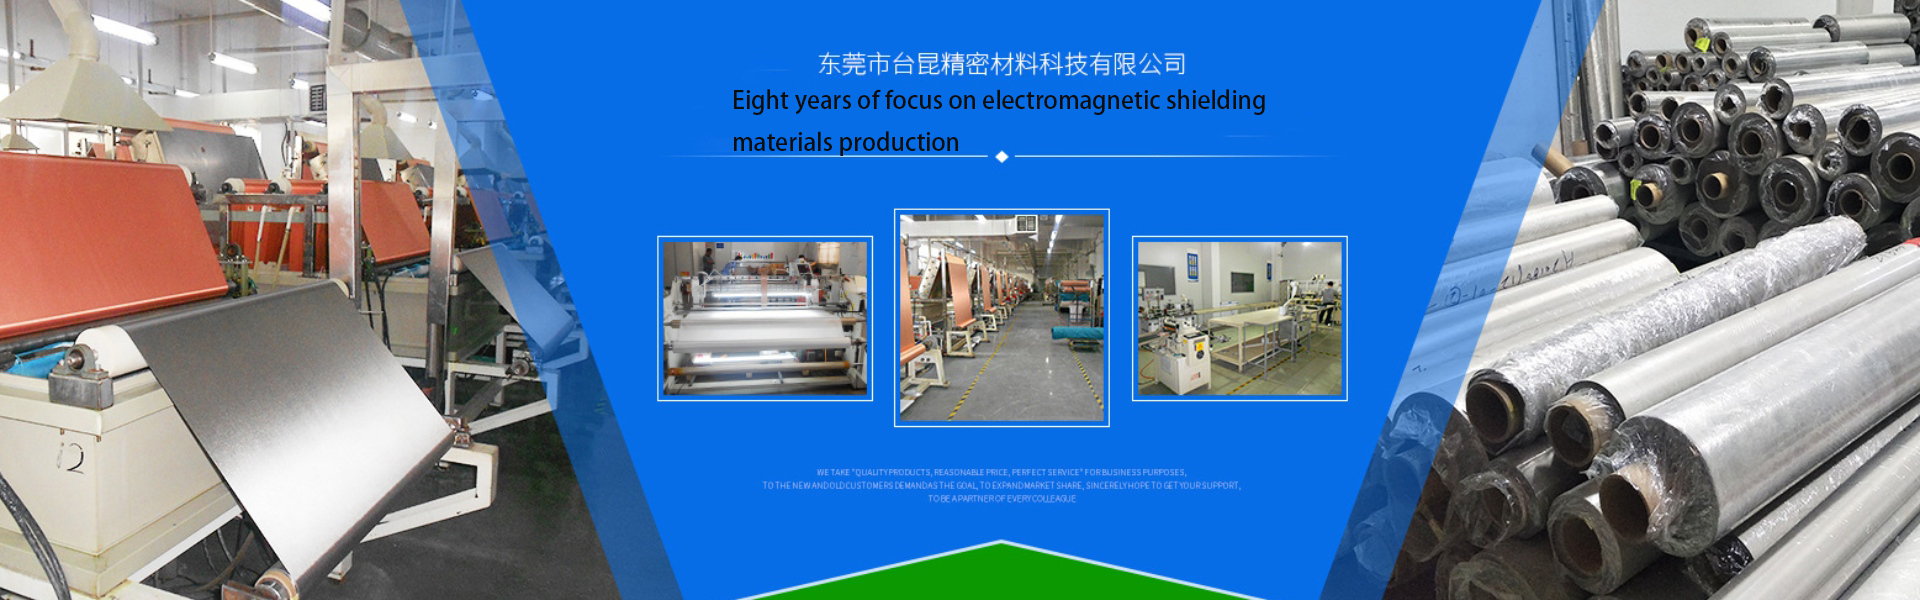 Dongguan Taikun Precision Materials Technology Co. , Ltd.